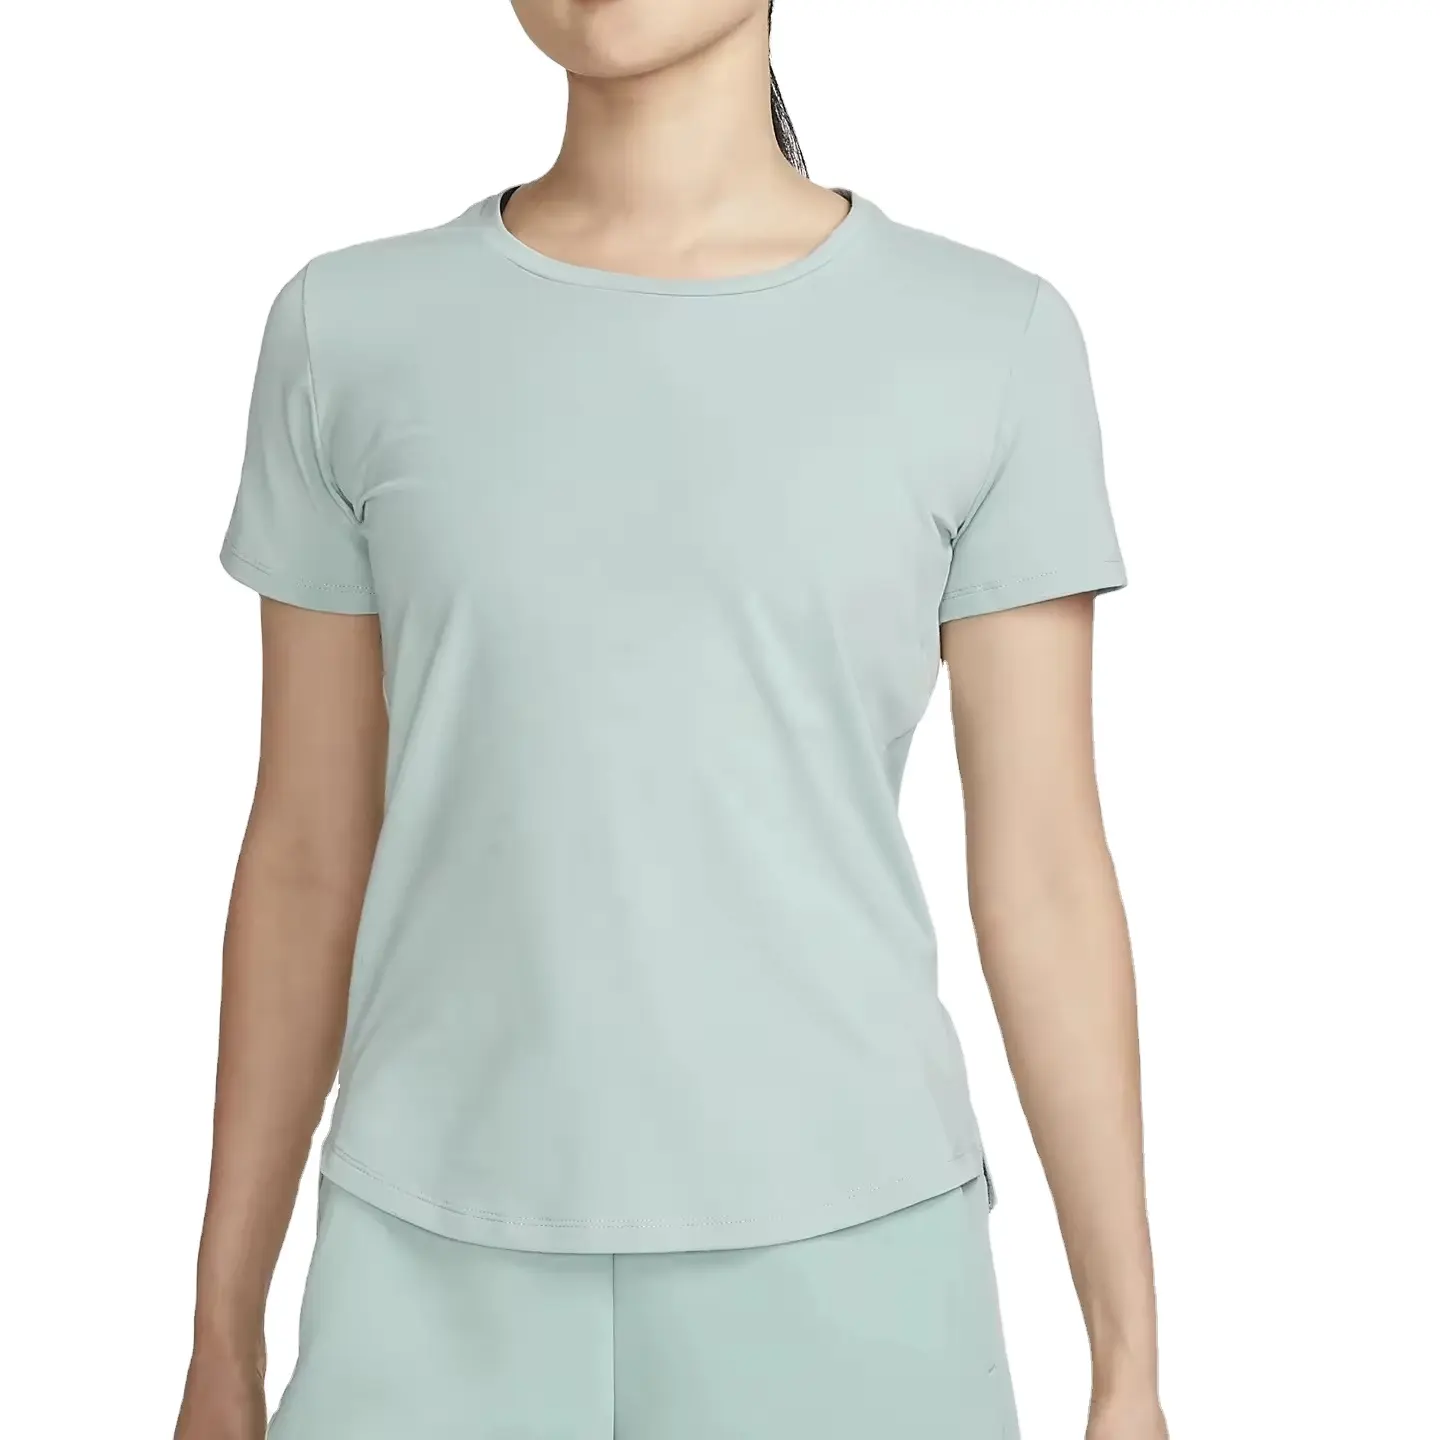 Camiseta para mulheres com tecido de bambu personalizado, camiseta de algodão reciclado liso orgânico respirável com logotipo